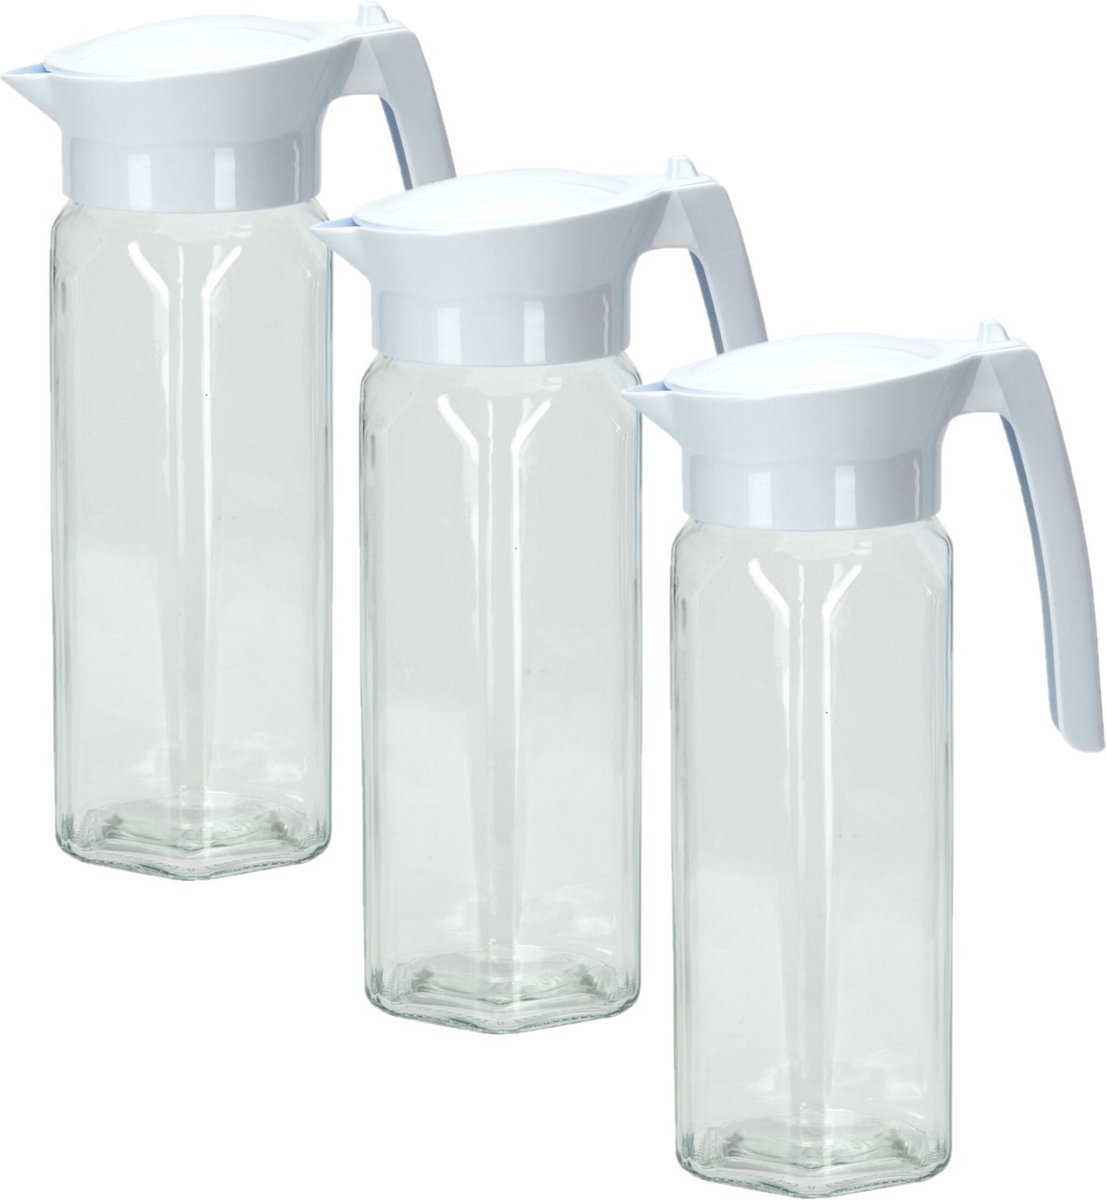 3x stuks glazen schenkkannen/waterkannen met deksel 1,5 liter - Sapkannen/waterkannen/schenkkannen